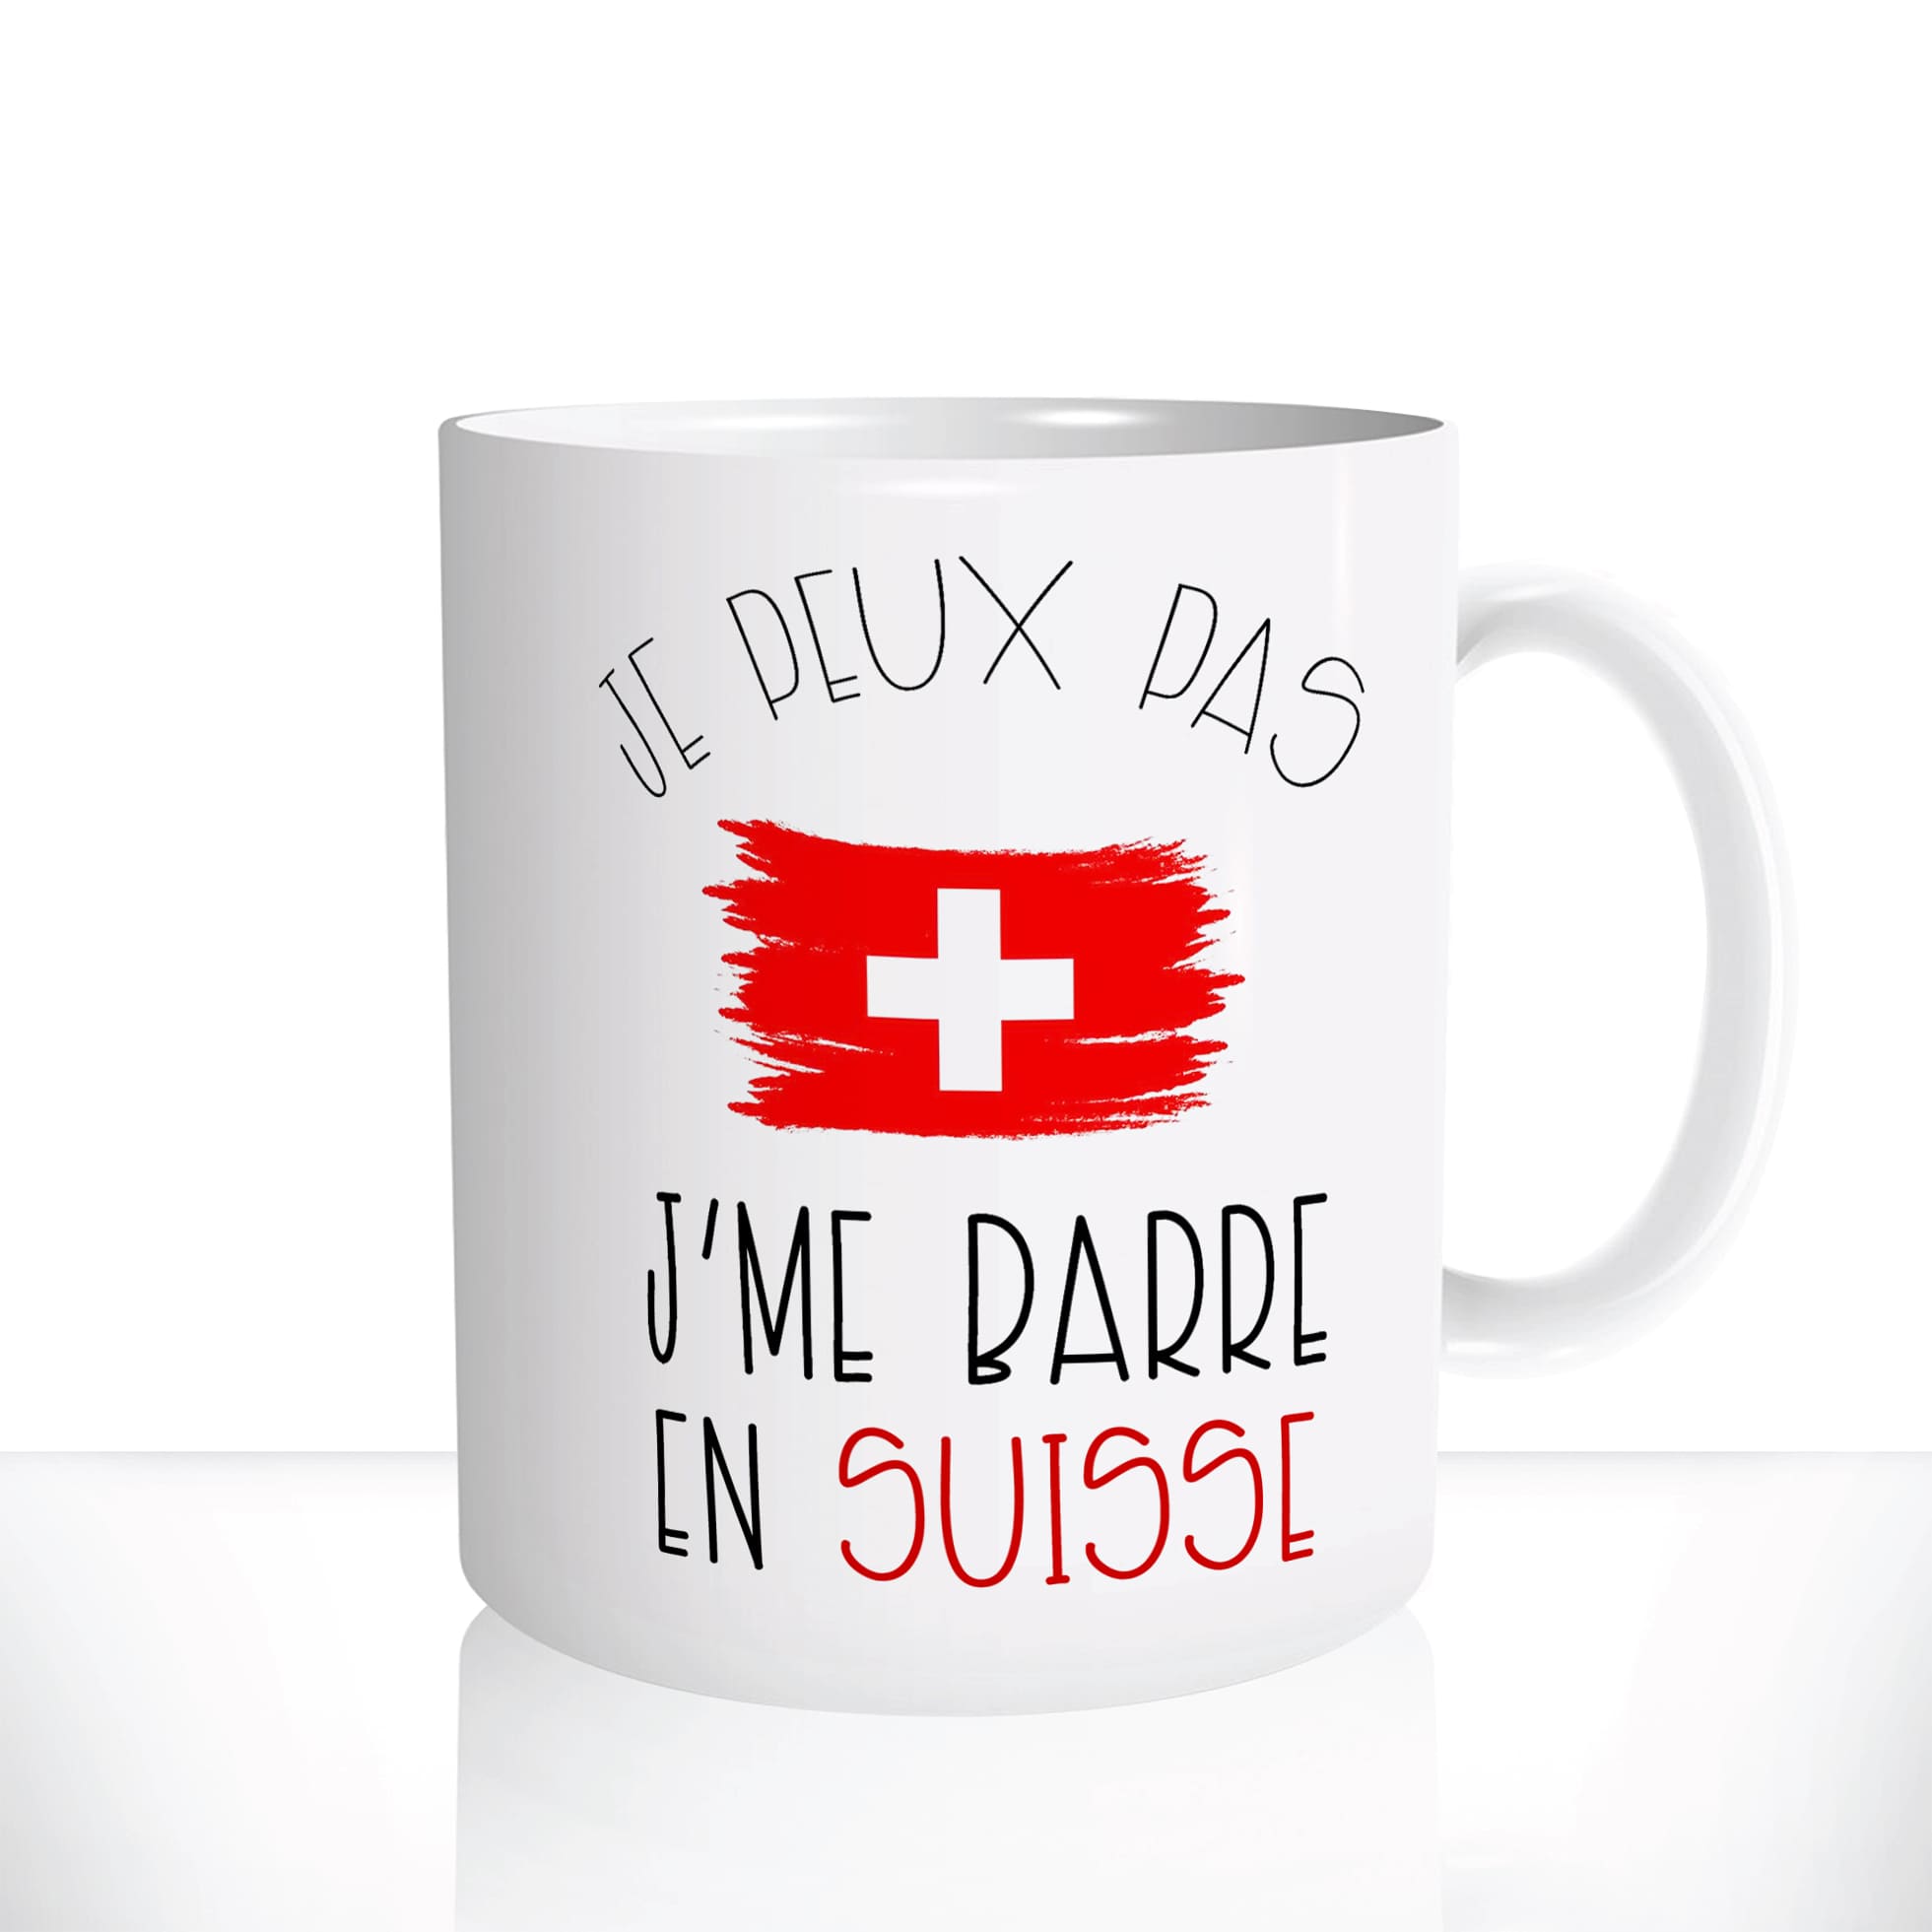 mug-blanc-11oz-325ml-céramique-tasse-cadeau-je-peux-pas-je-me-barre-en-suisse-switzerland-expatrié-vacances-personnalisable2